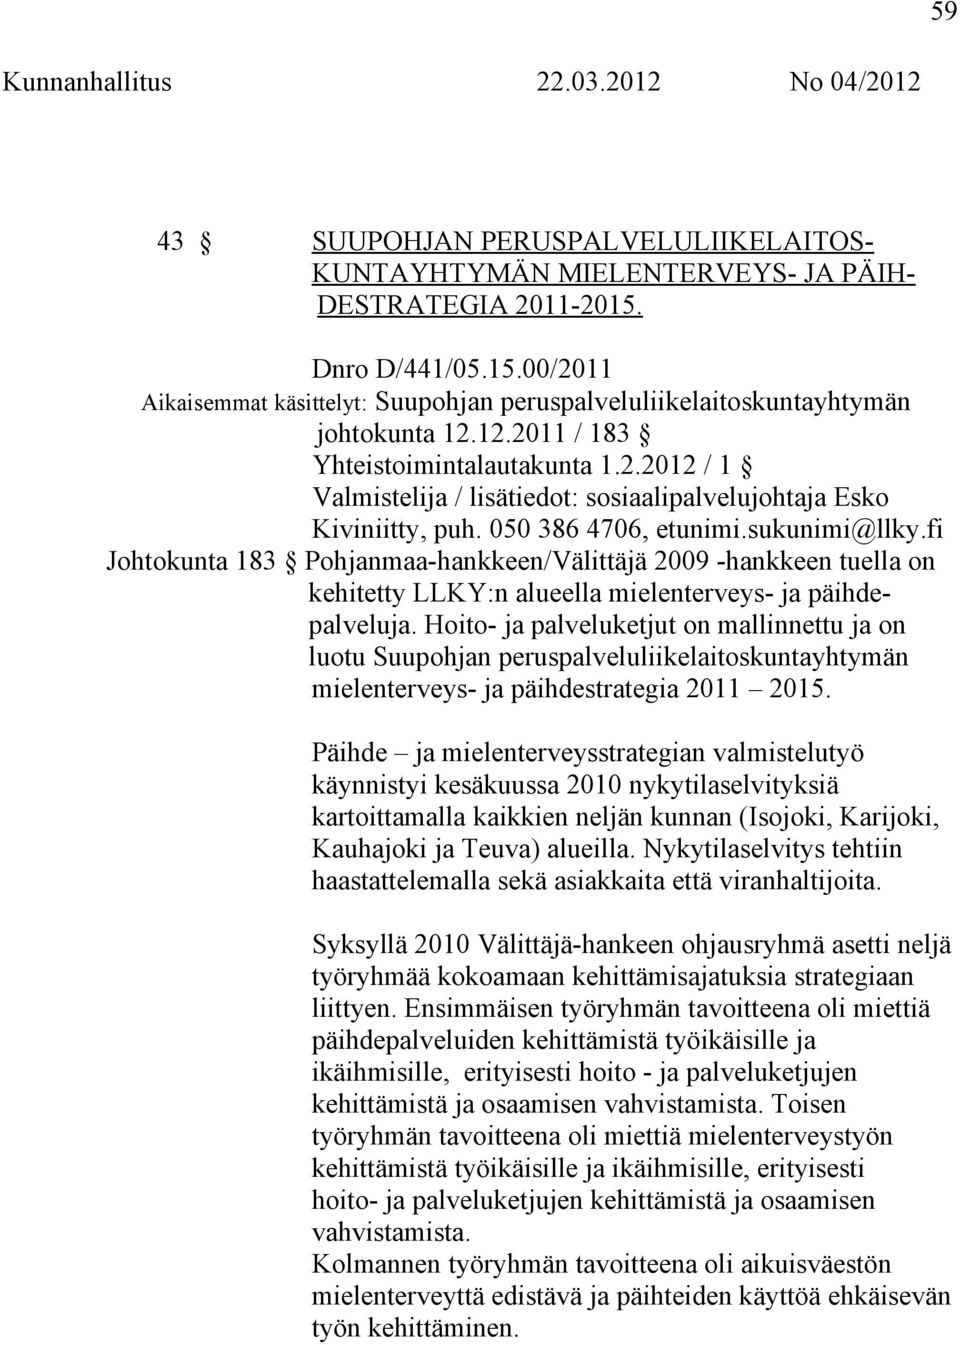 fi Johtokunta 183 Pohjanmaa-hankkeen/Välittäjä 2009 -hankkeen tuella on kehitetty LLKY:n alueella mielenterveys- ja päihdepalveluja.